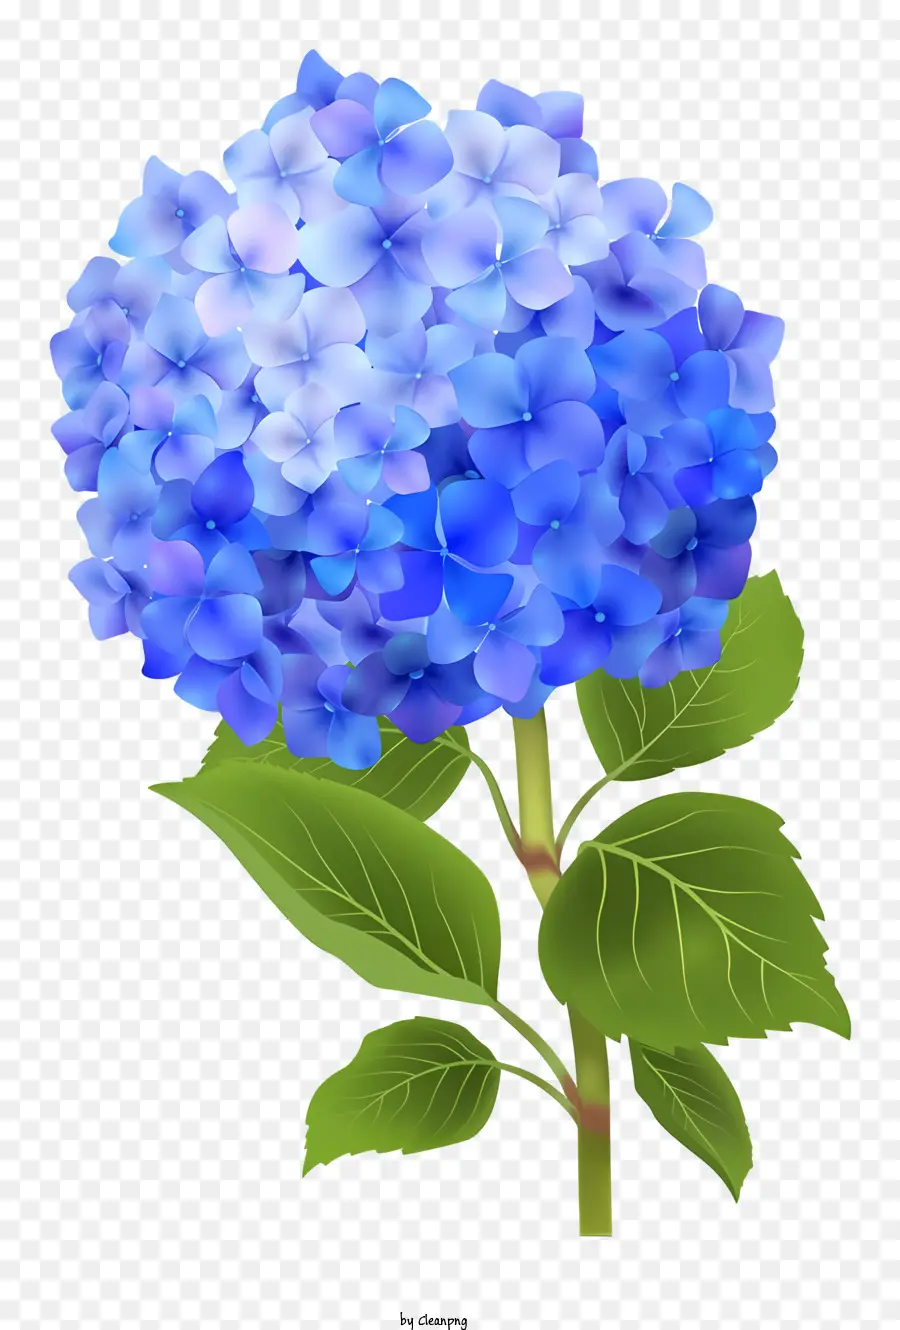 hortensie blaue Hydrantblume schwarze Hintergrund grüne Blätter einzelner Stiel - Blaue Hydrantblume mit grünen Blättern auf Schwarz